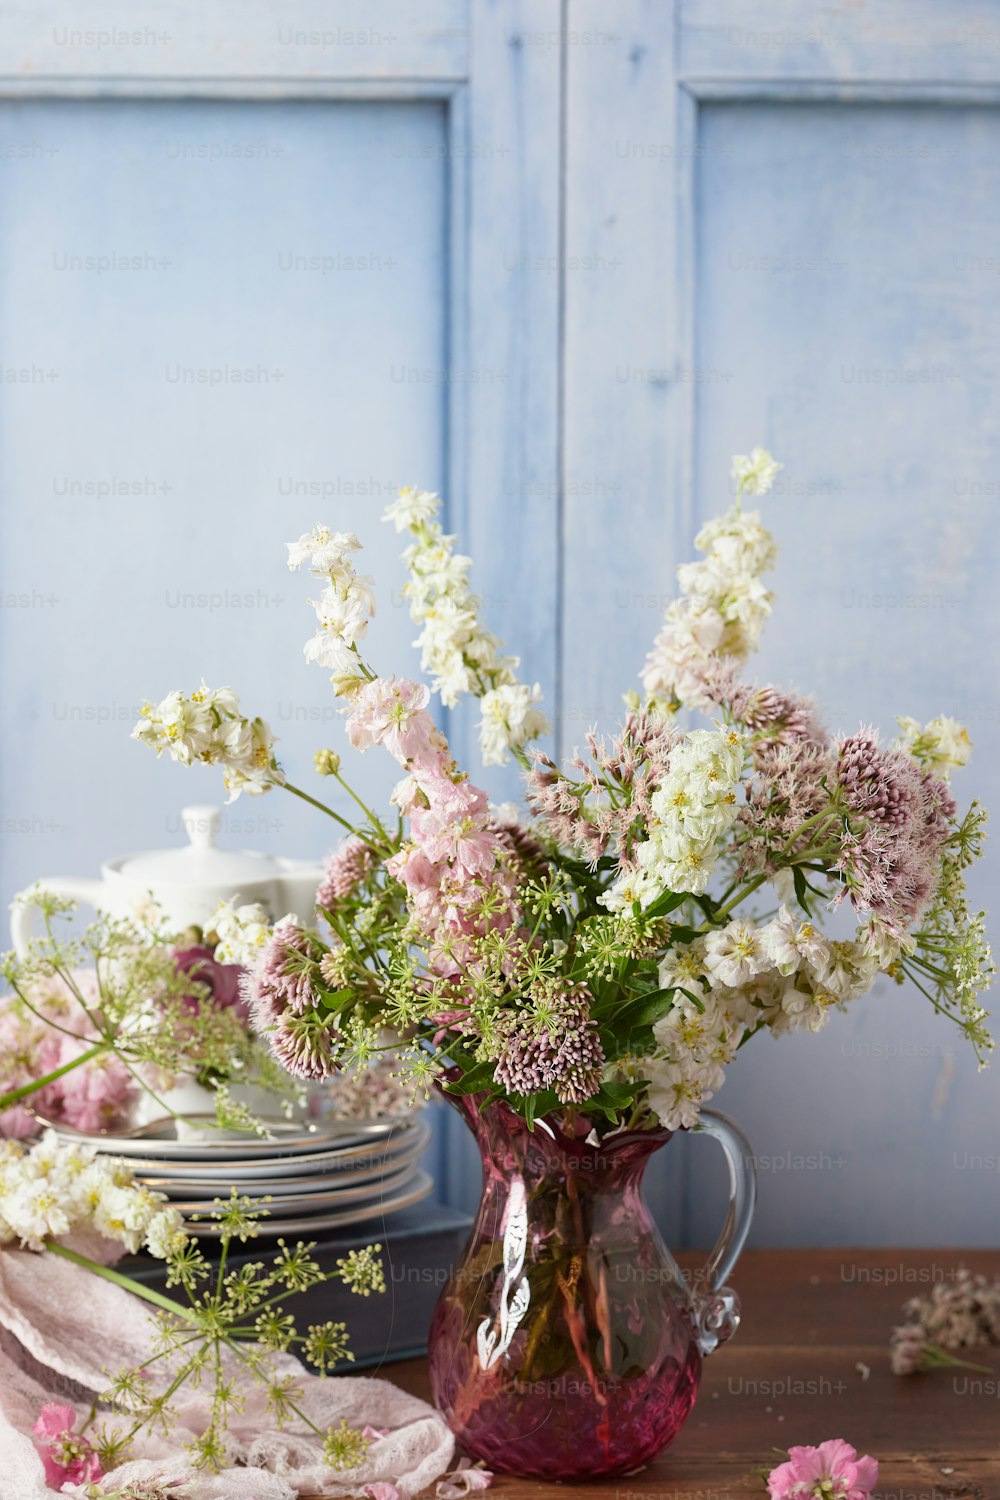 Un vase rempli de nombreuses fleurs blanches et roses